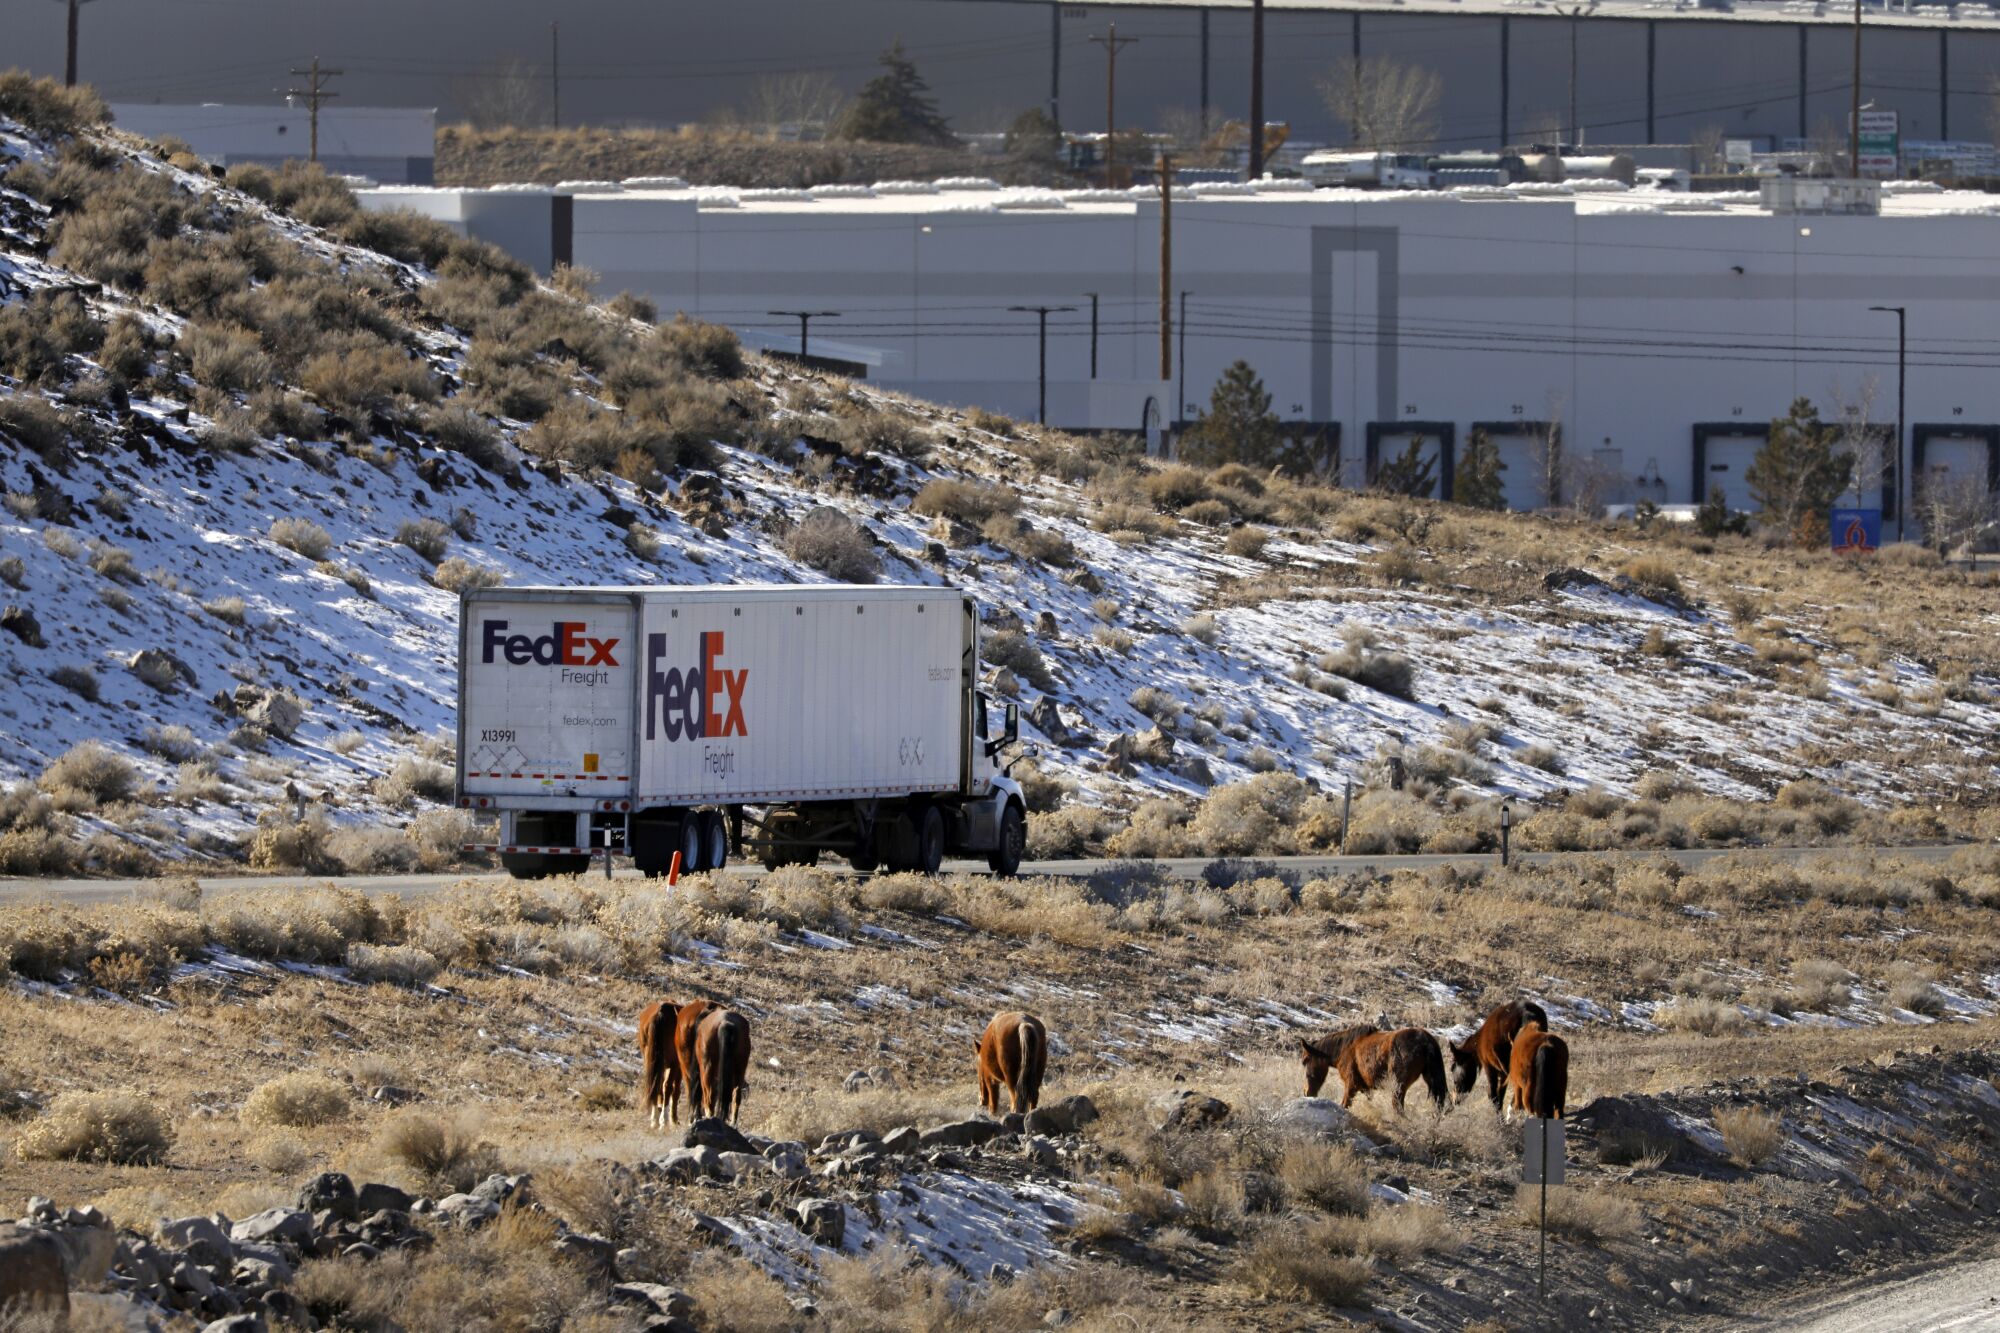 Wild horses graze near a FedEx truck.